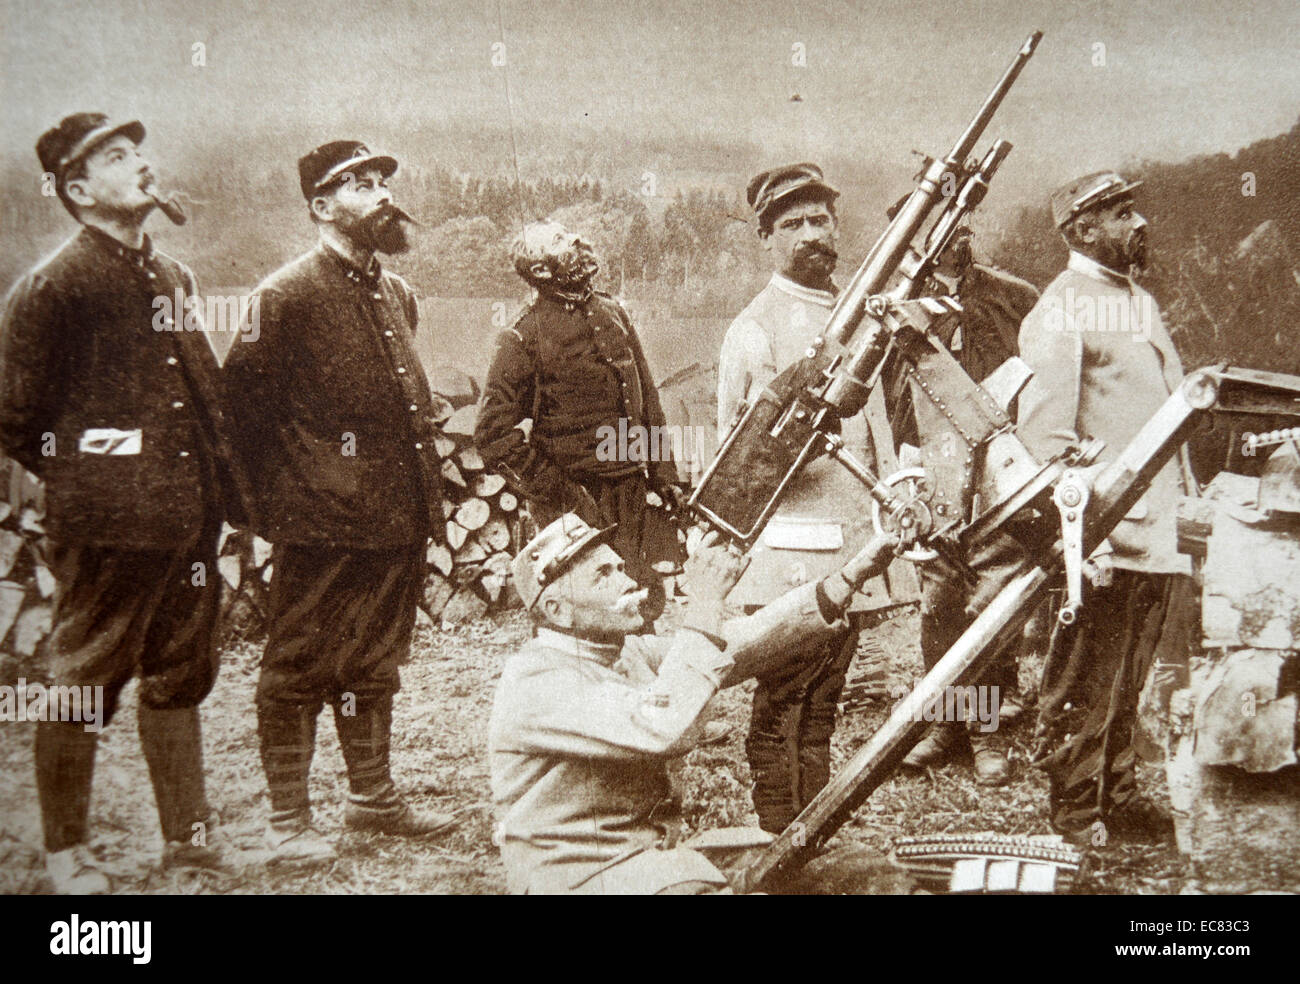 Photographie d'artilleurs anti-aérien français dans position d'artillerie. Datée 1917 Banque D'Images